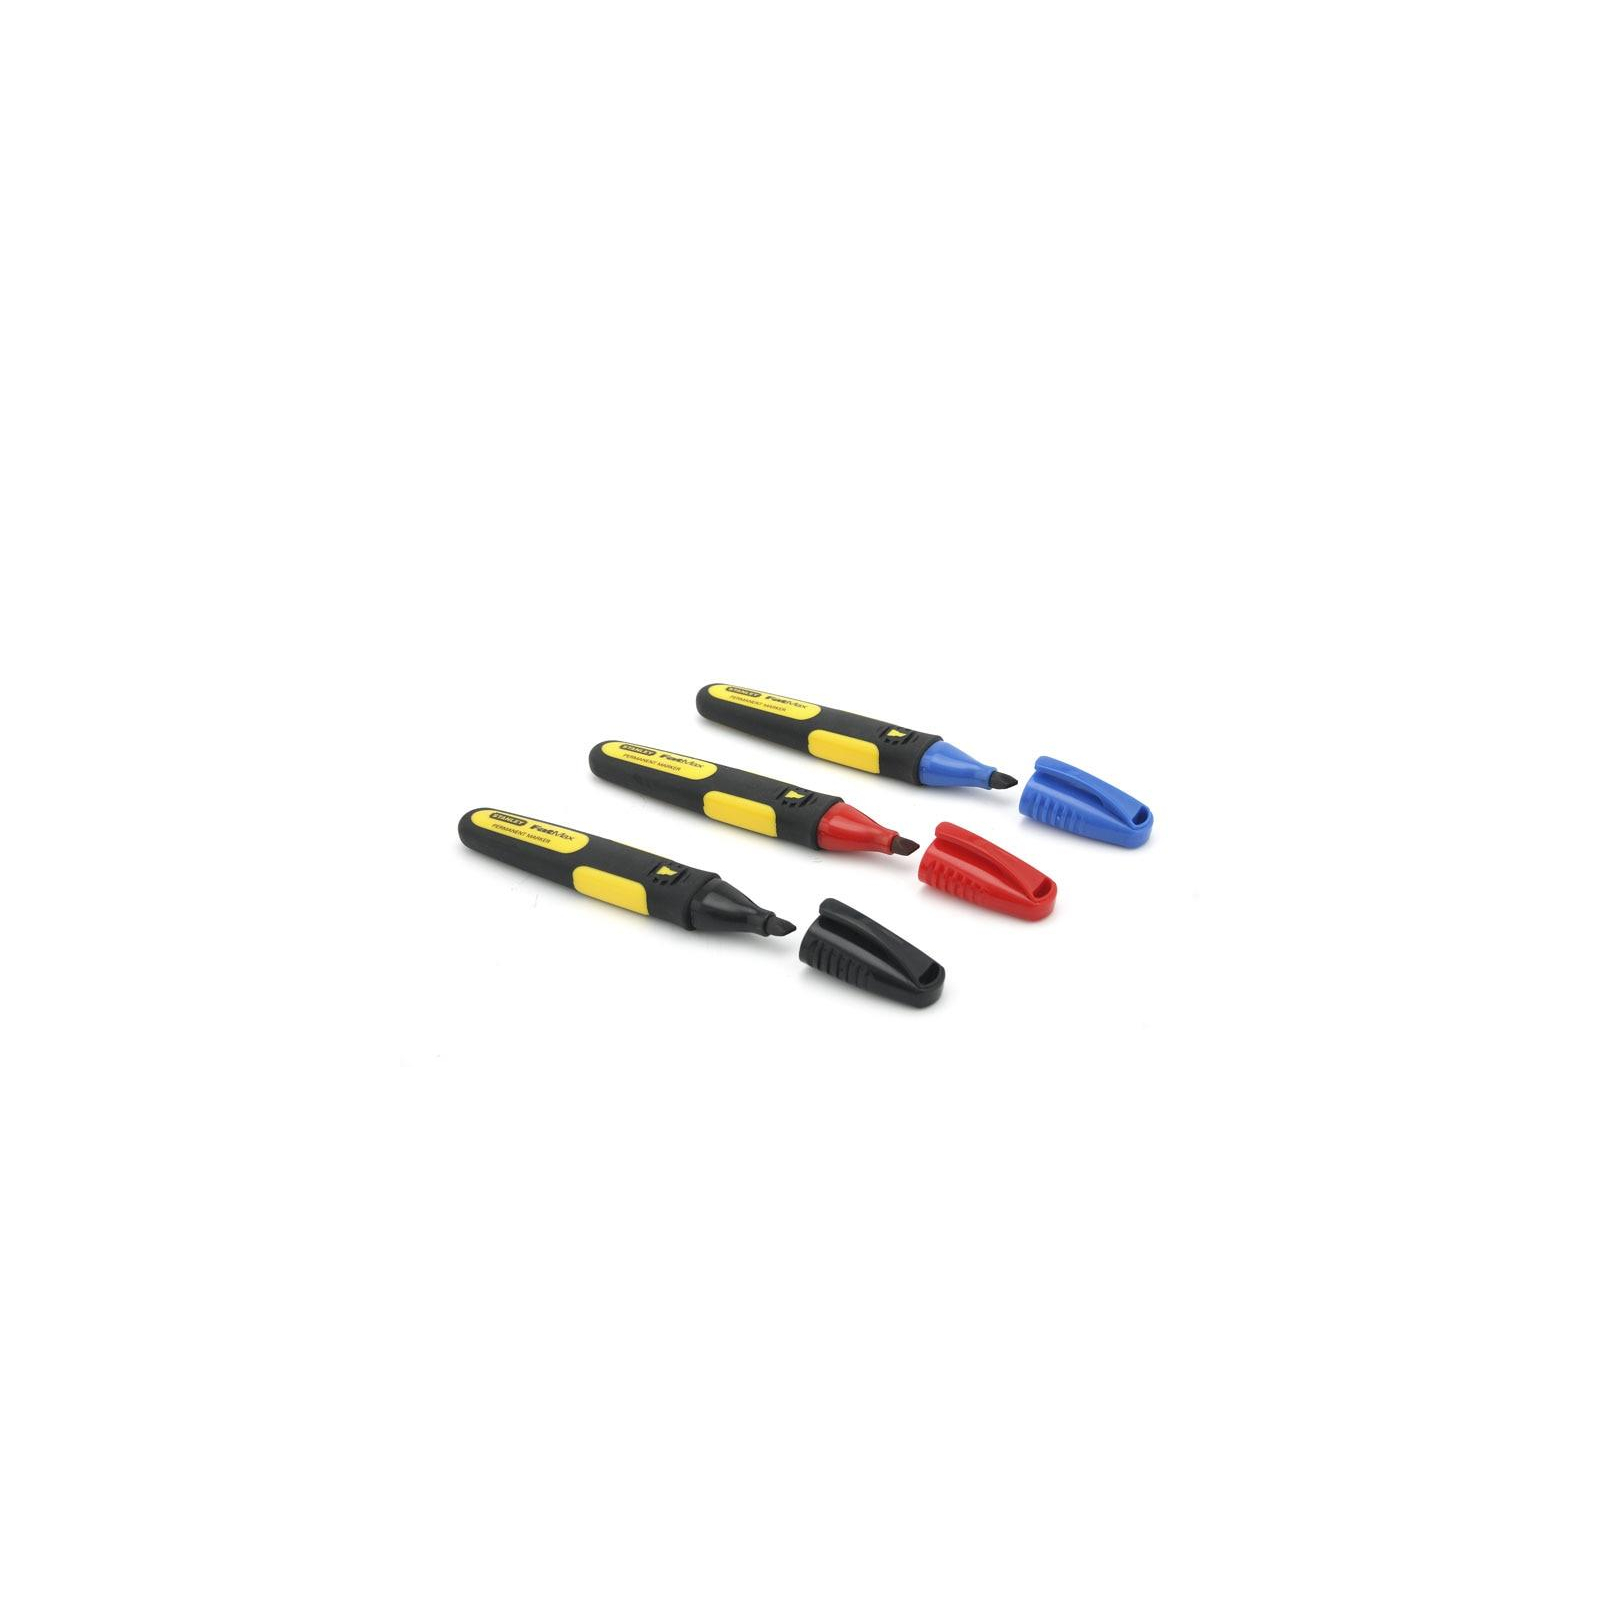 Набор маркеров Stanley FatMax, 3шт, стойкие чернила, черный, красный, синий (0-47-315)